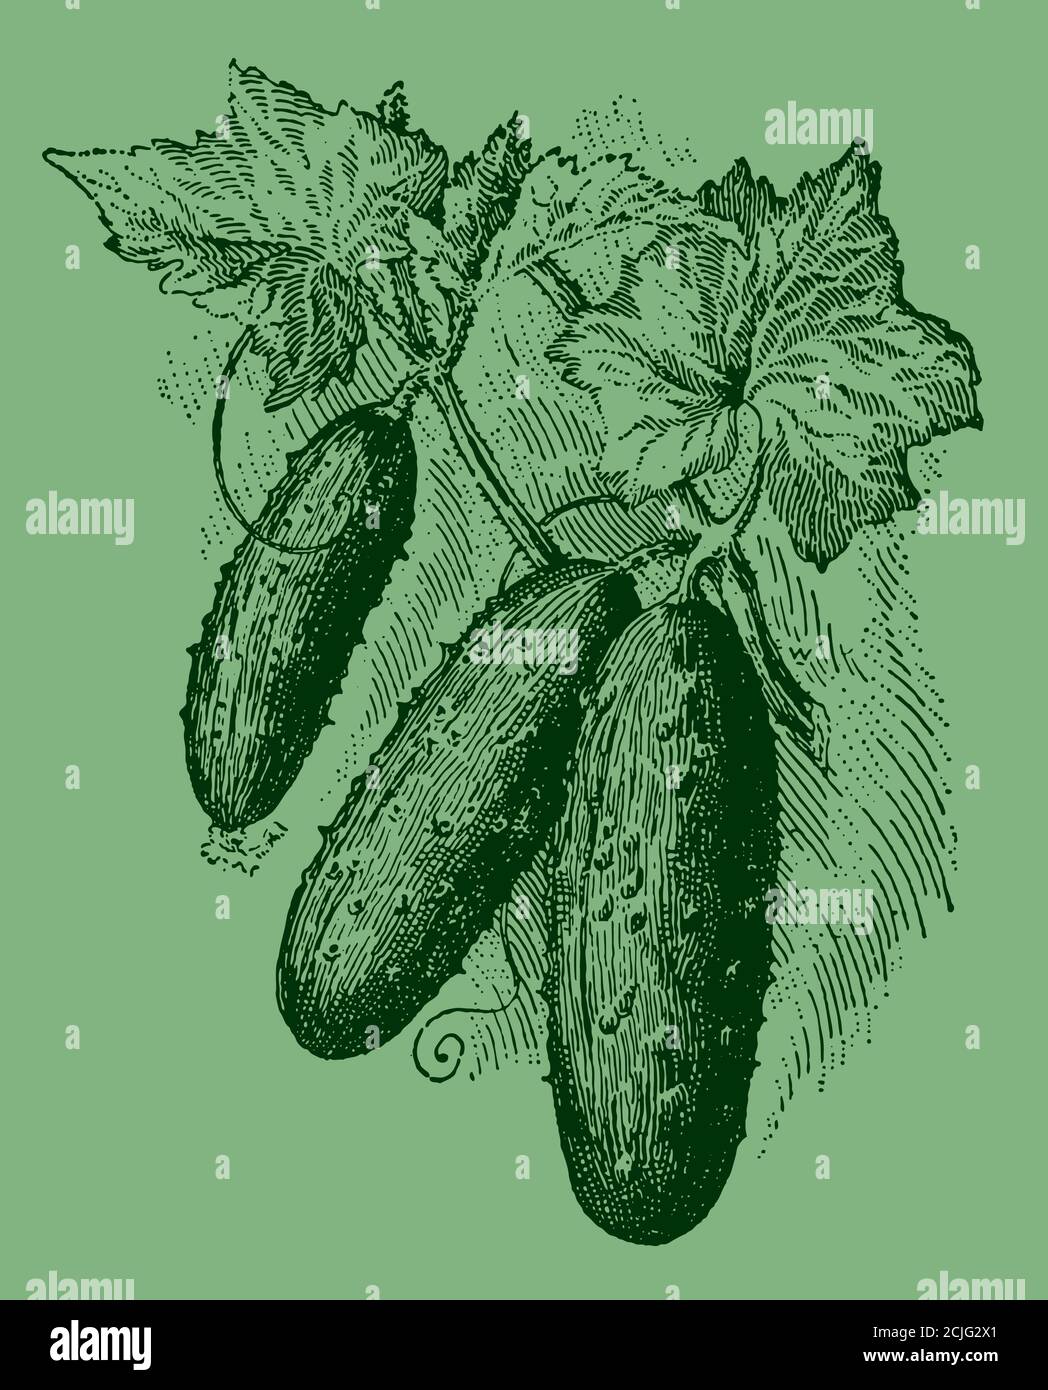 Trois concombres qui poussent sur une vigne, isolés sur un fond vert. Illustration après une gravure antique du XIXe siècle Illustration de Vecteur